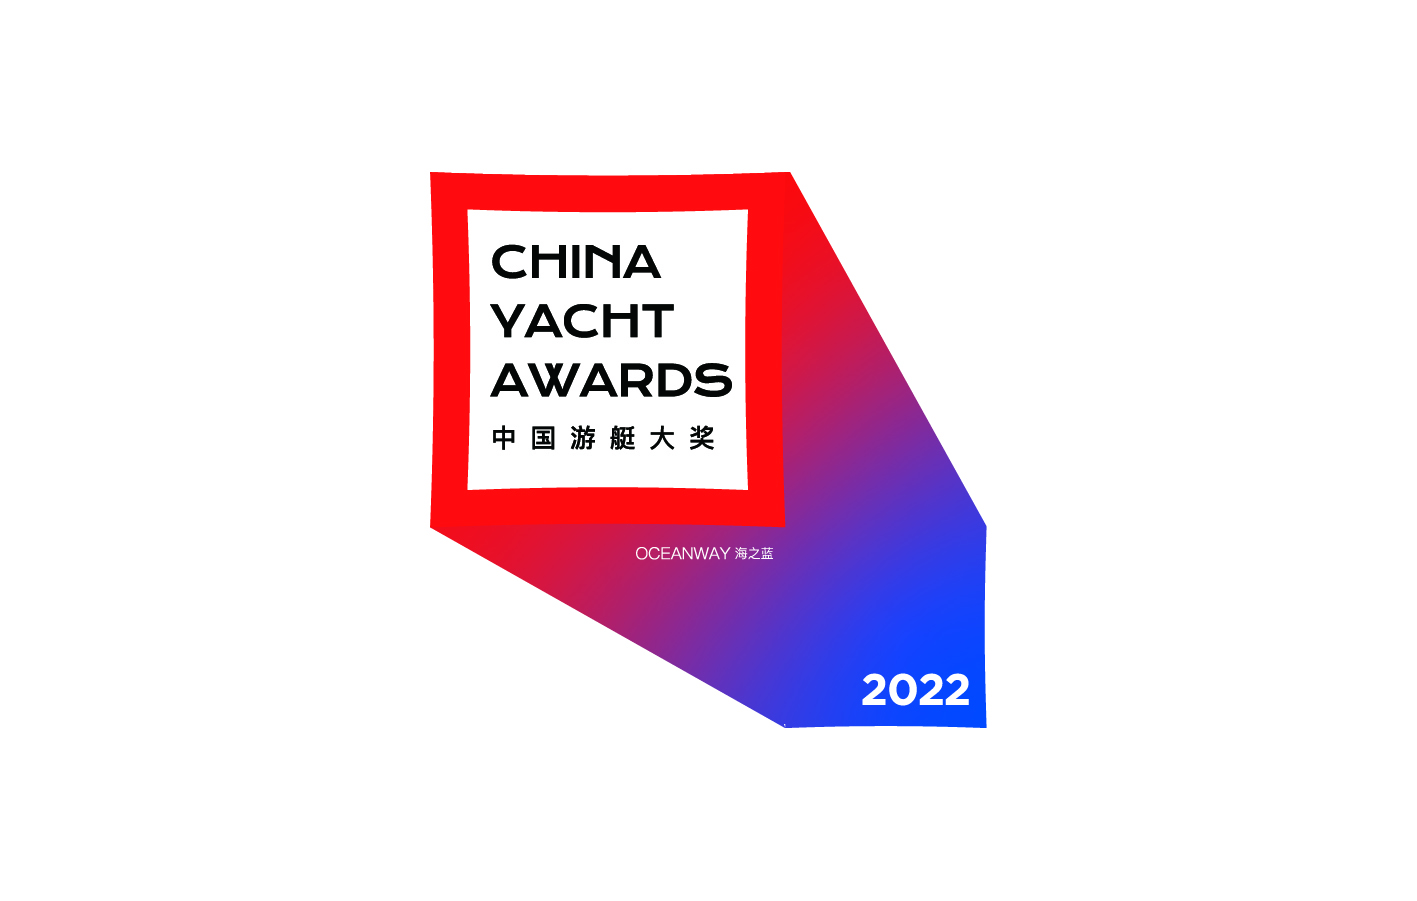 知艇-2022中国游艇大奖榜单揭晓